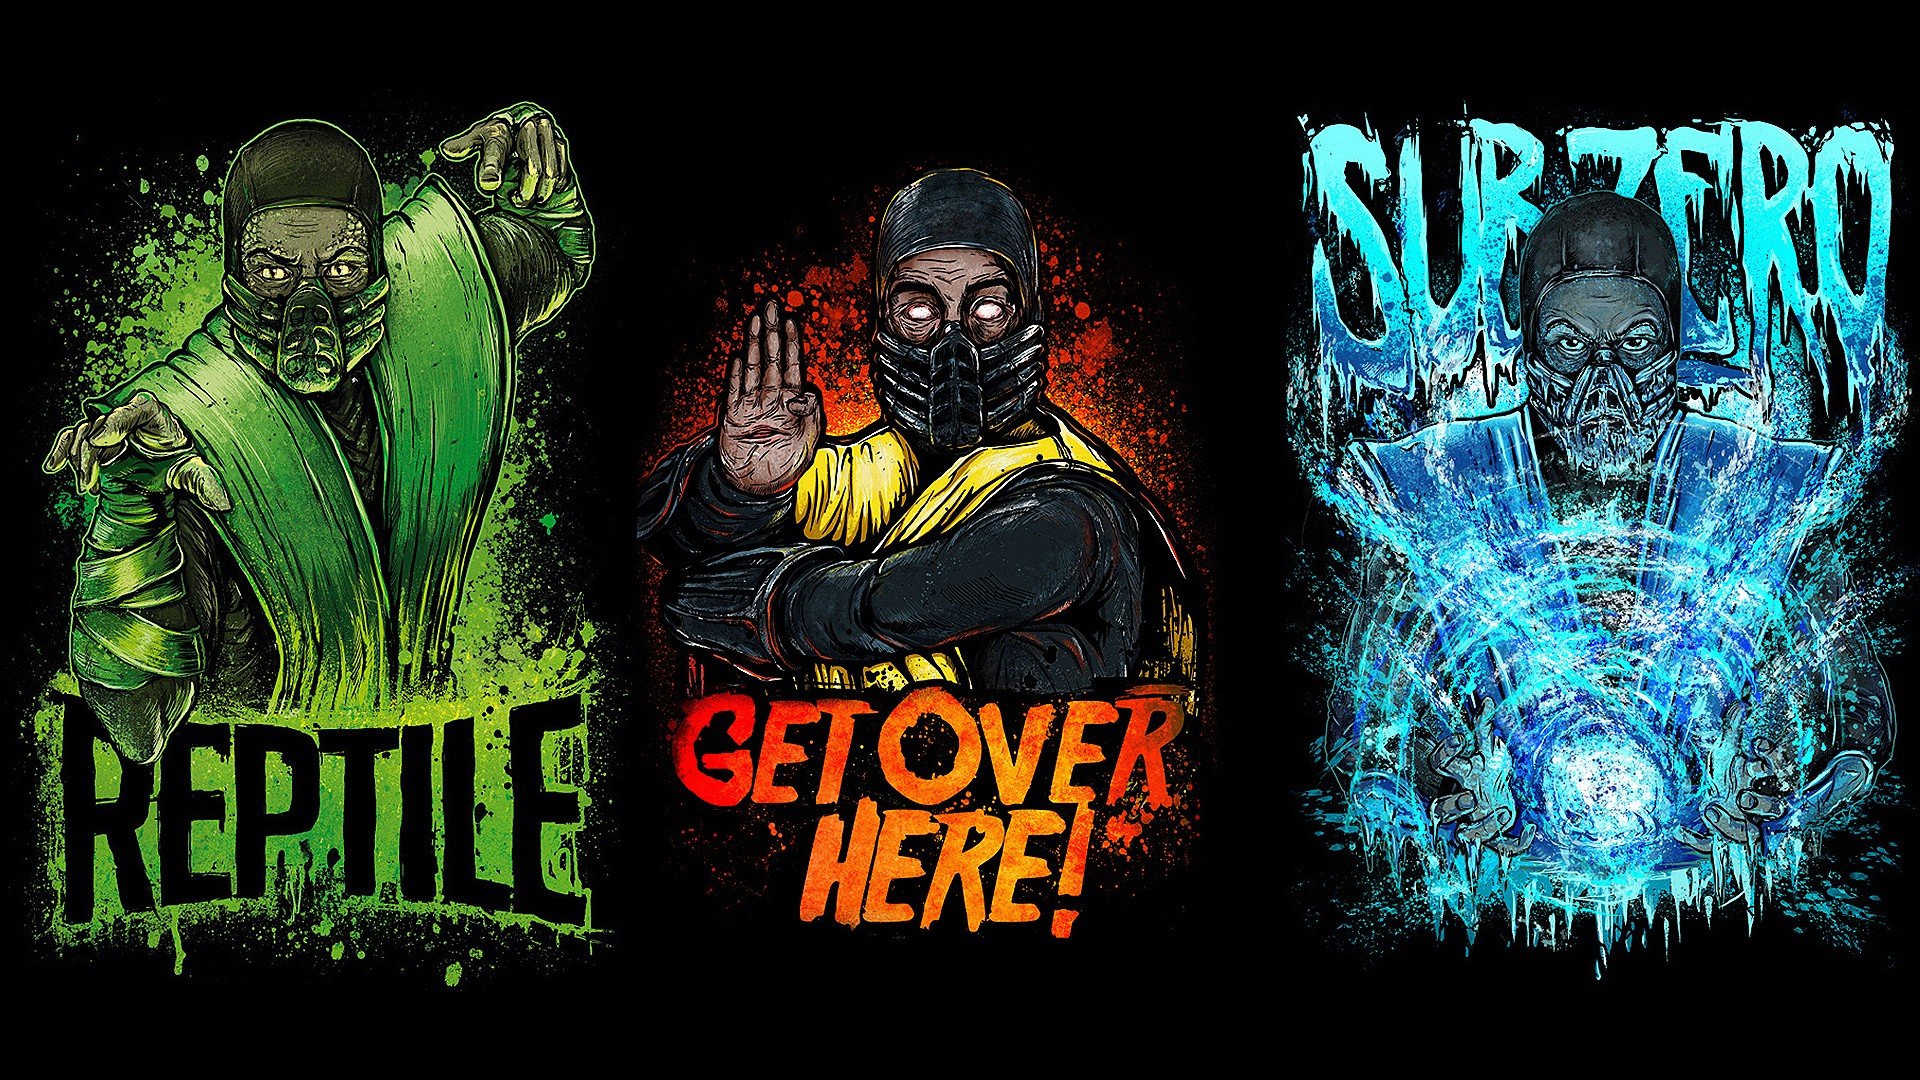 Mortal Kombat, Reptile (Mortal Kombat) HD Wallpapers / Desktop and